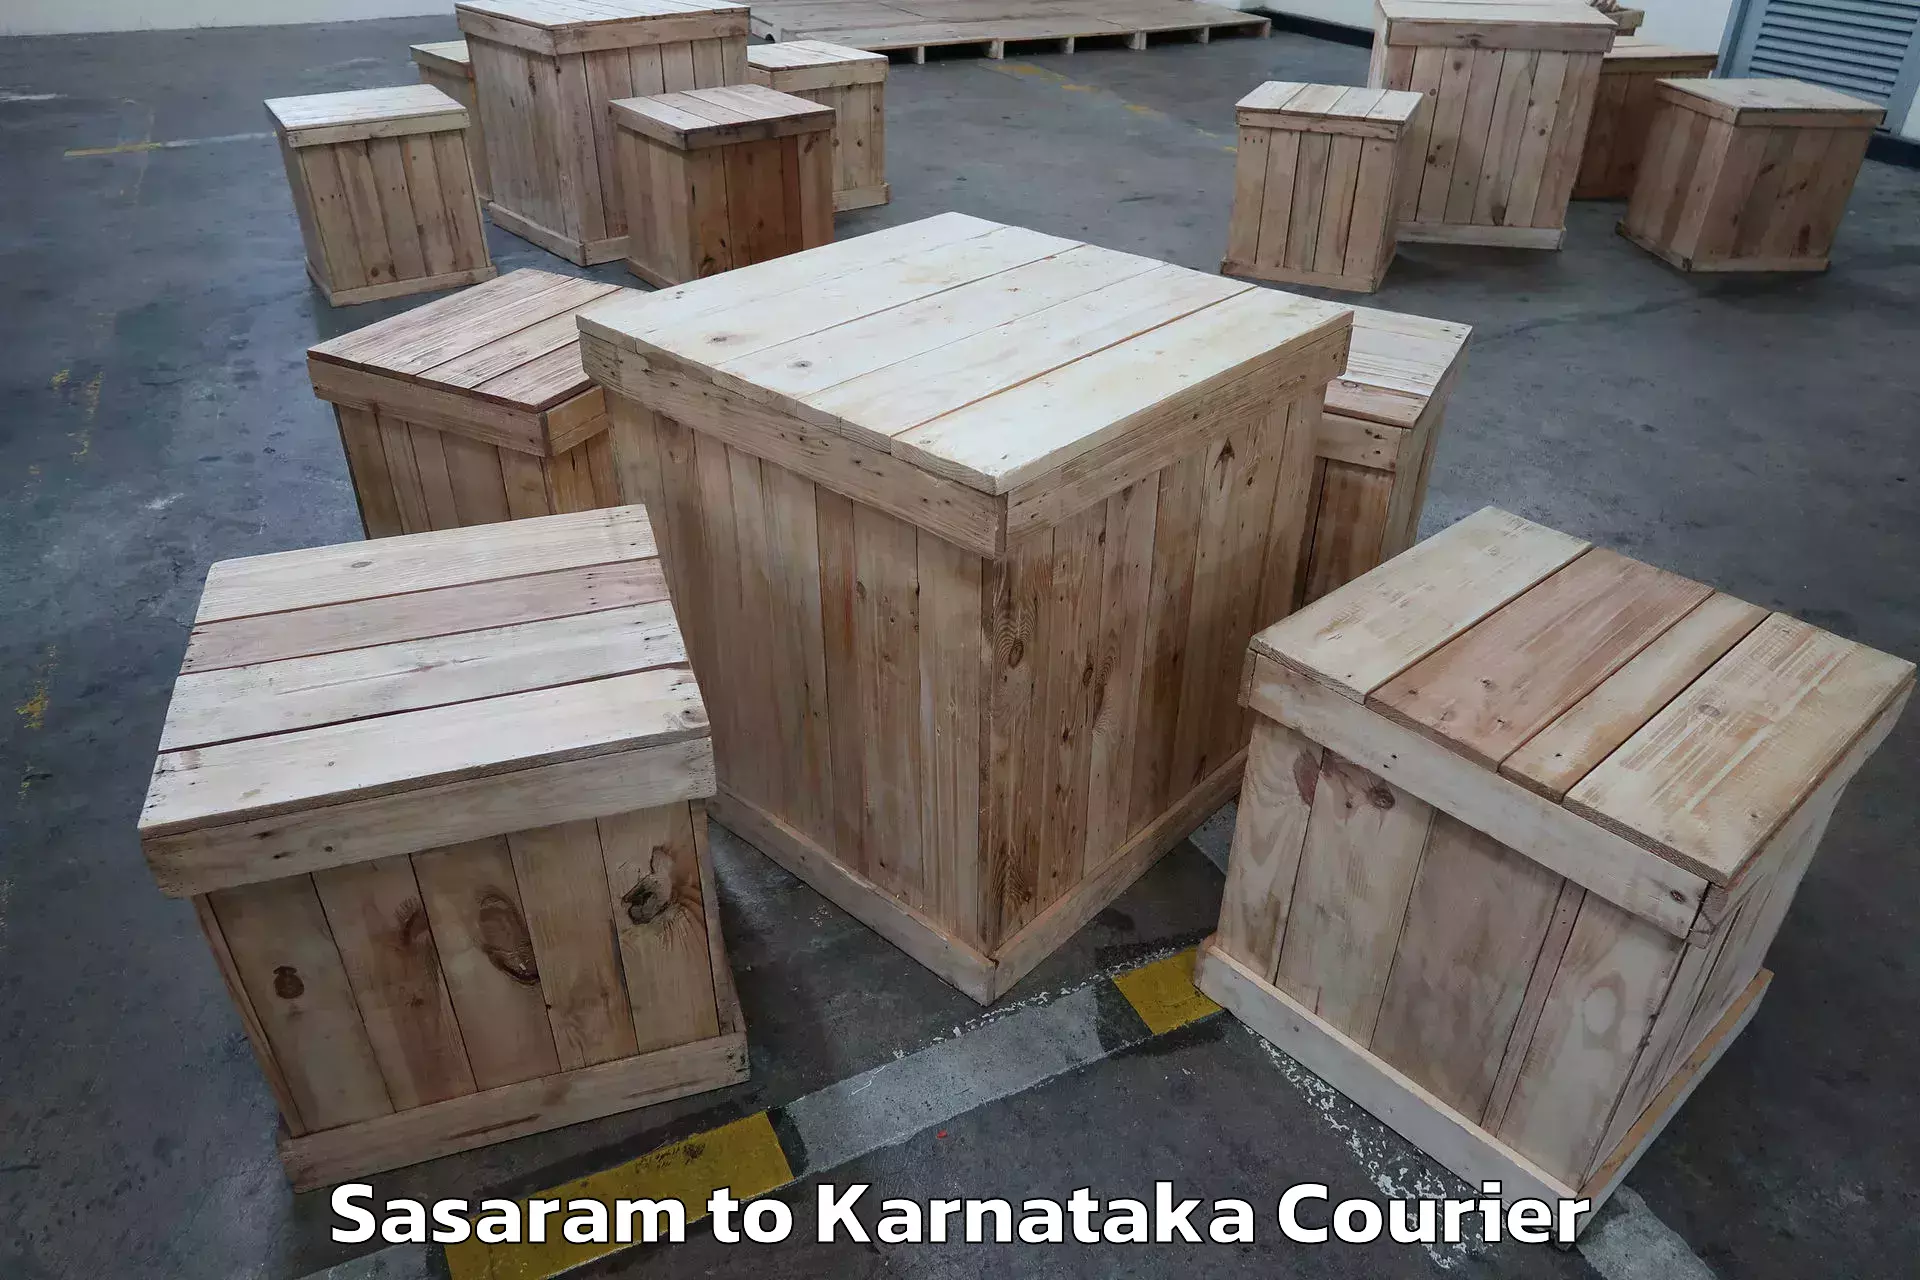 Furniture transport service Sasaram to Bangalore